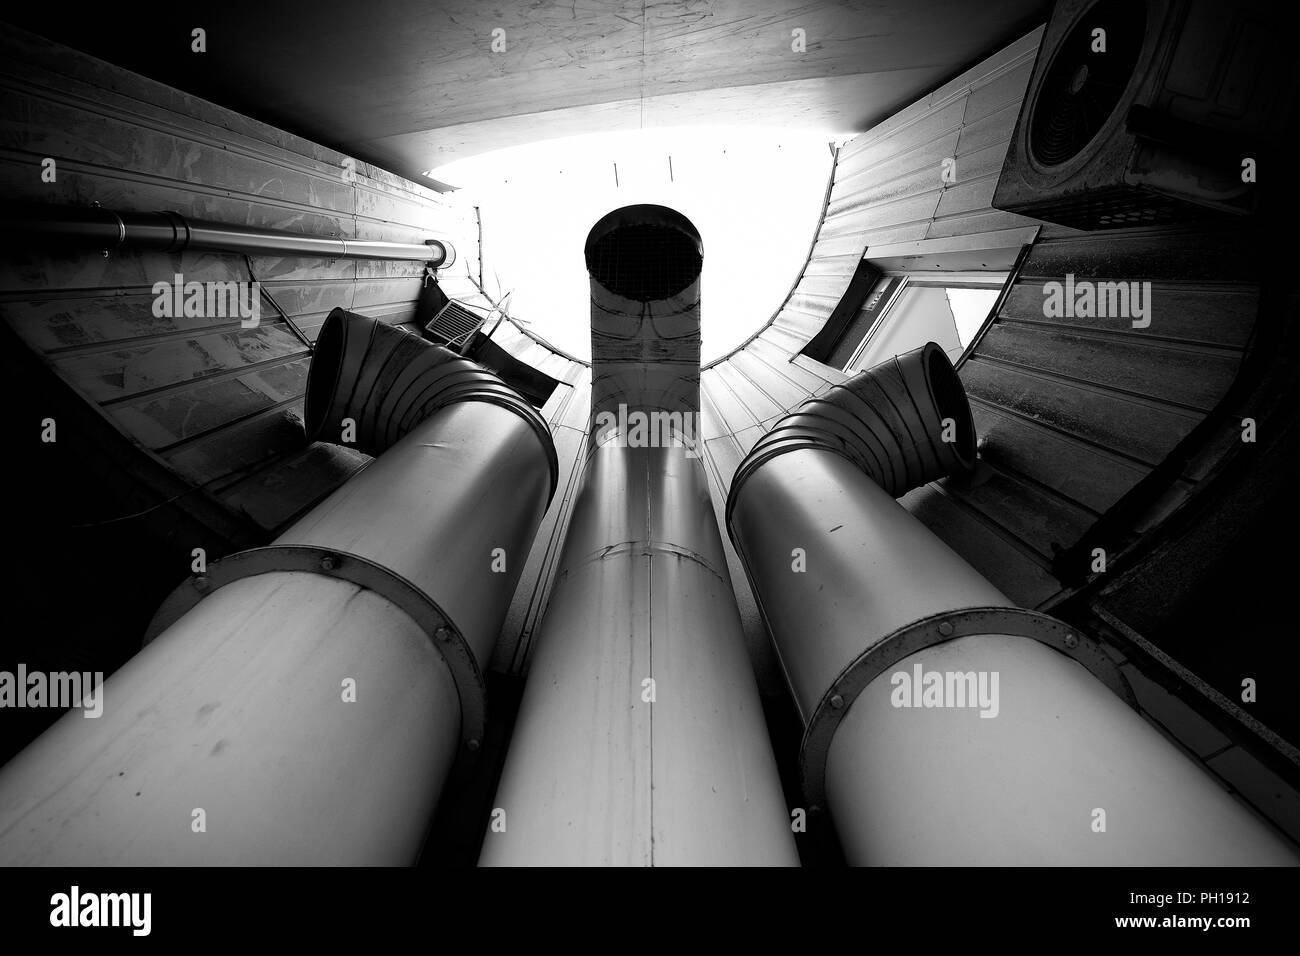 Tubo de escape chiminés en una fotografía en blanco y negro. Foto de stock